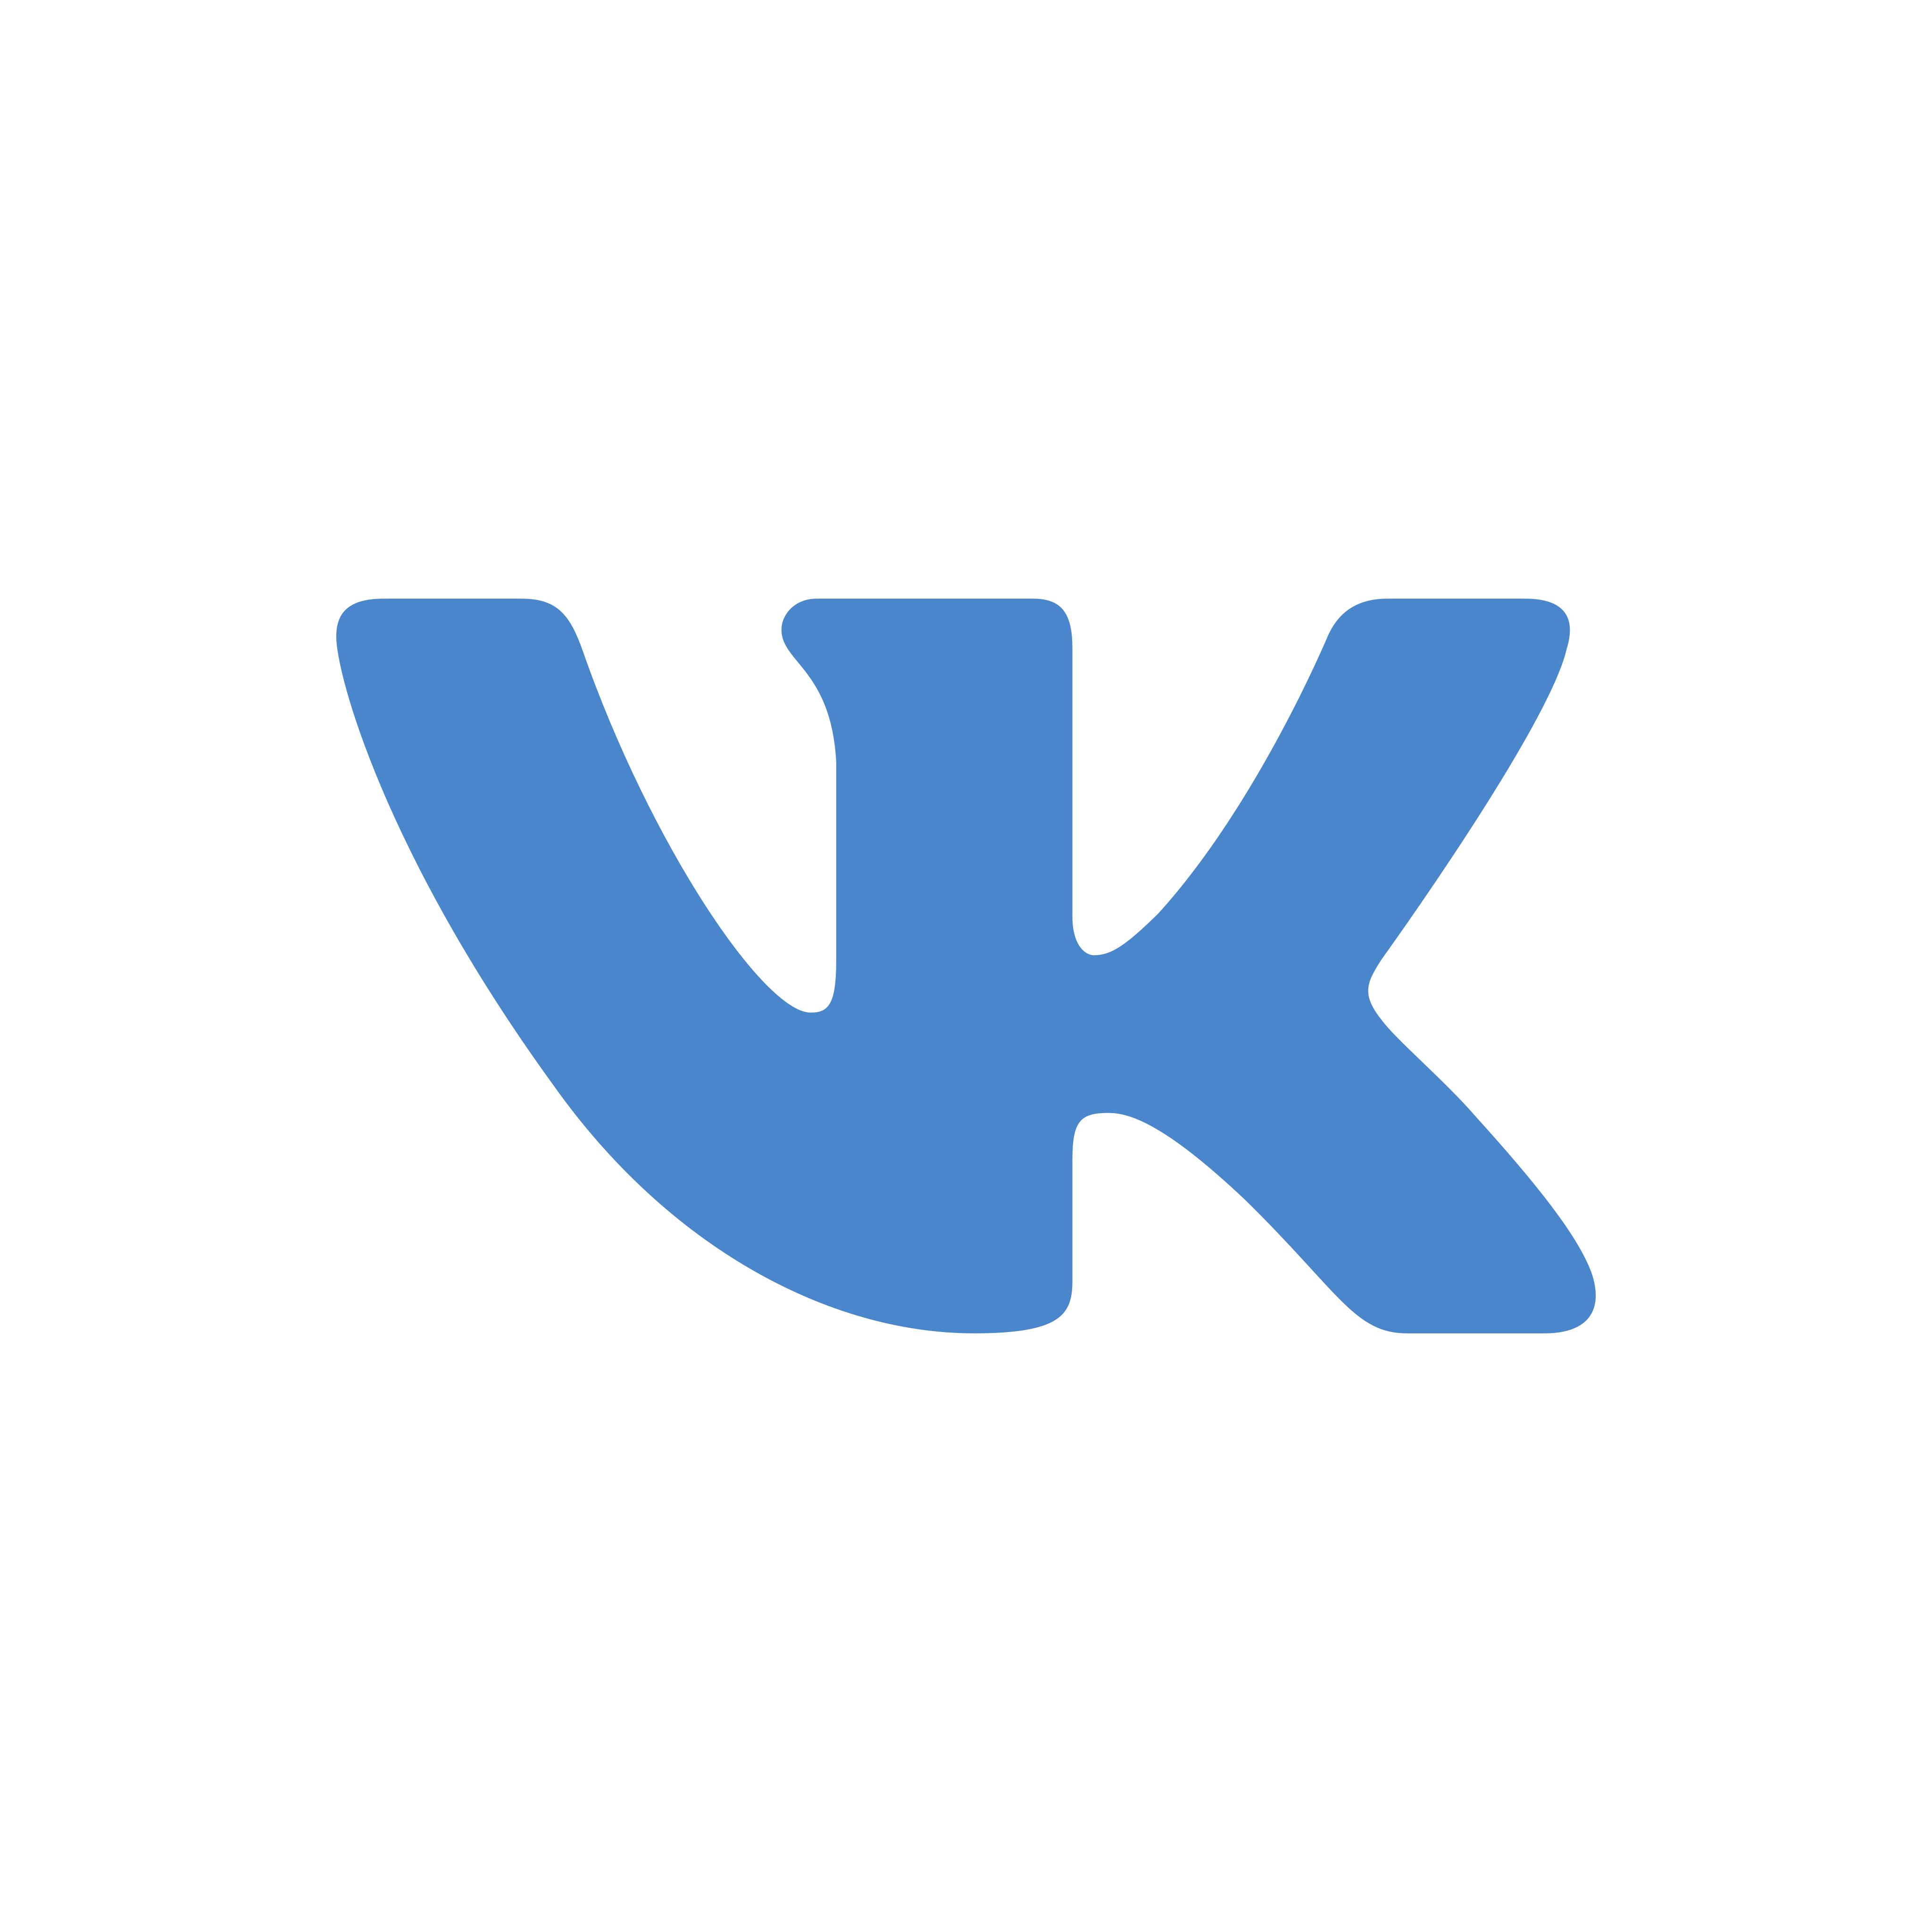 vk logo 0 - VK Logo